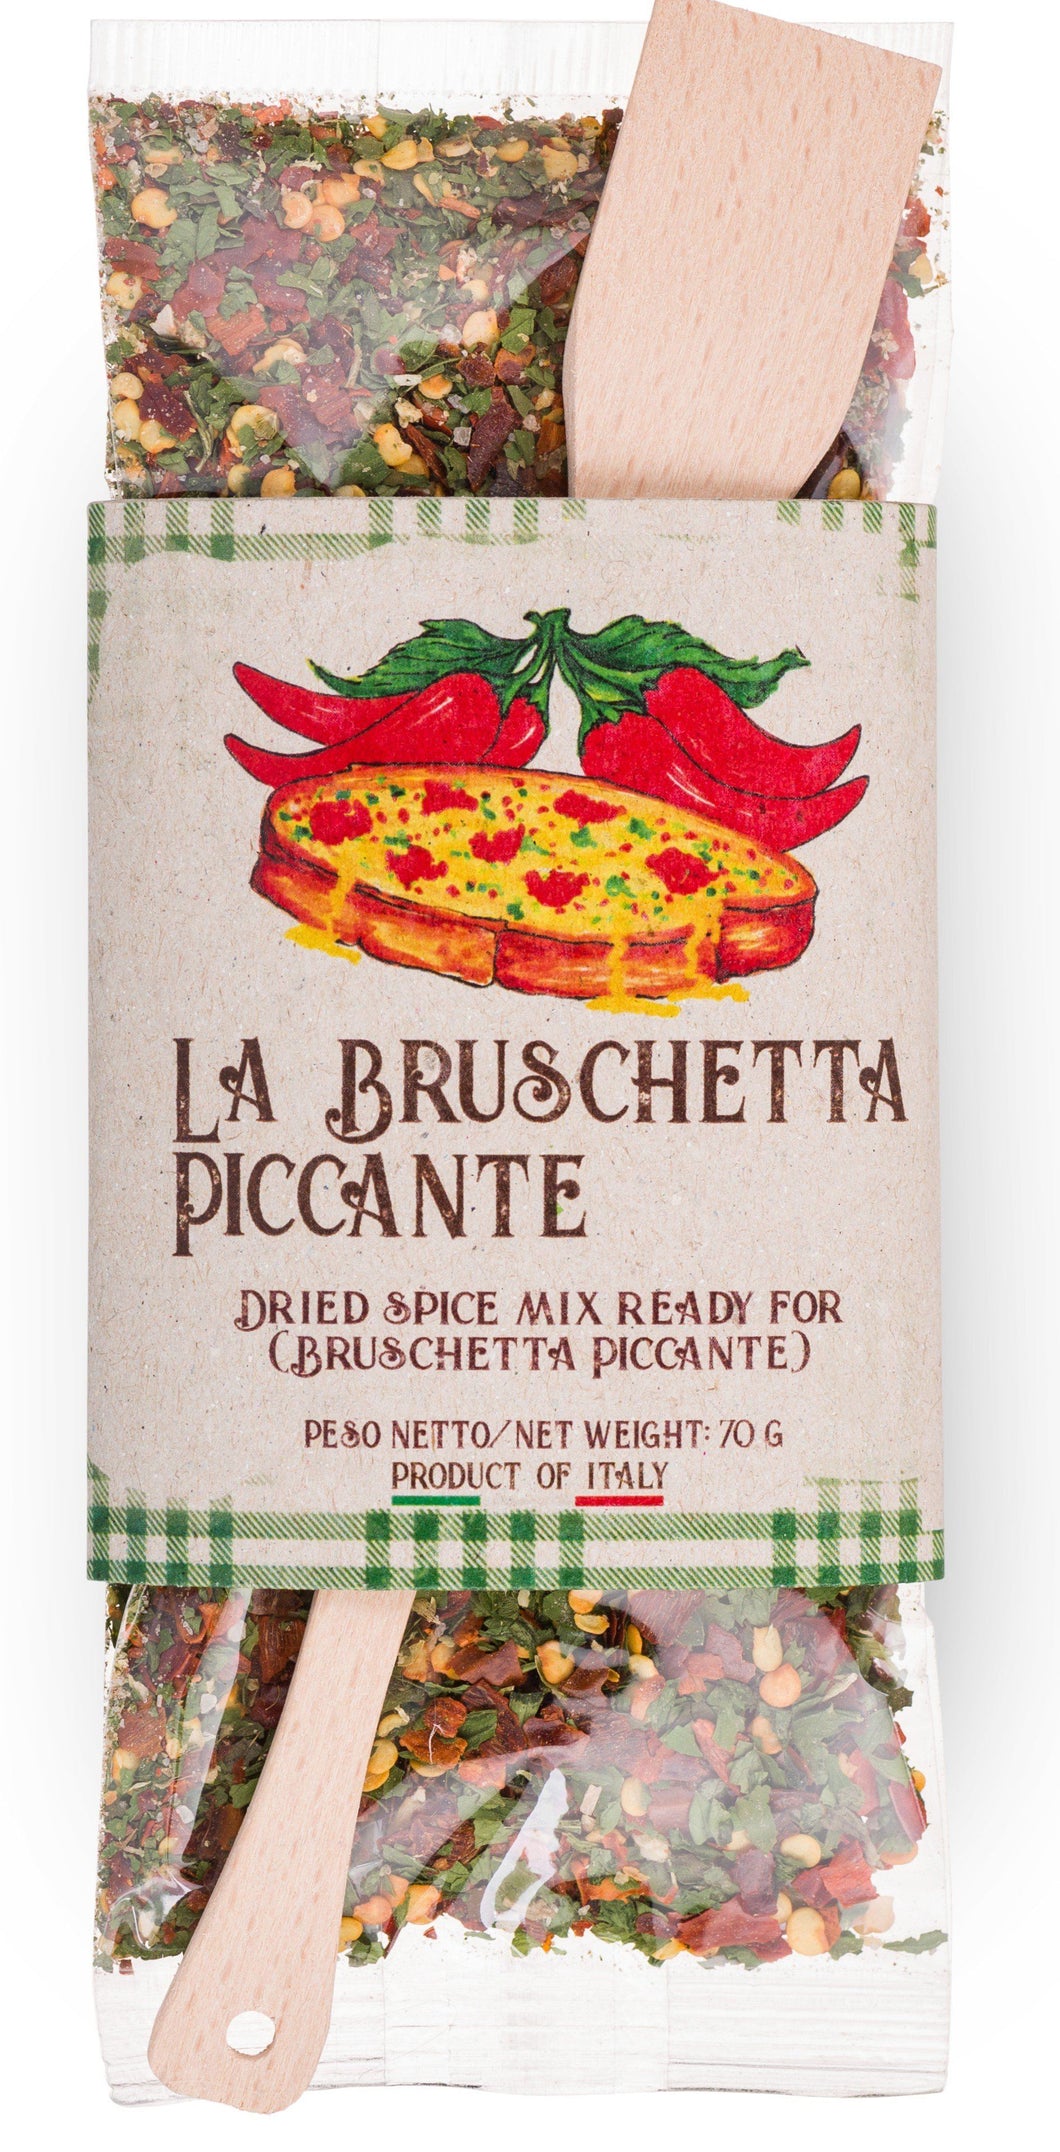 Ready Spice-Mix for Bruschetta Piccante by Casarecci di Calabria - 2.46 oz. SPICES PREMIUM ITALIAN FOOD AT HOME 